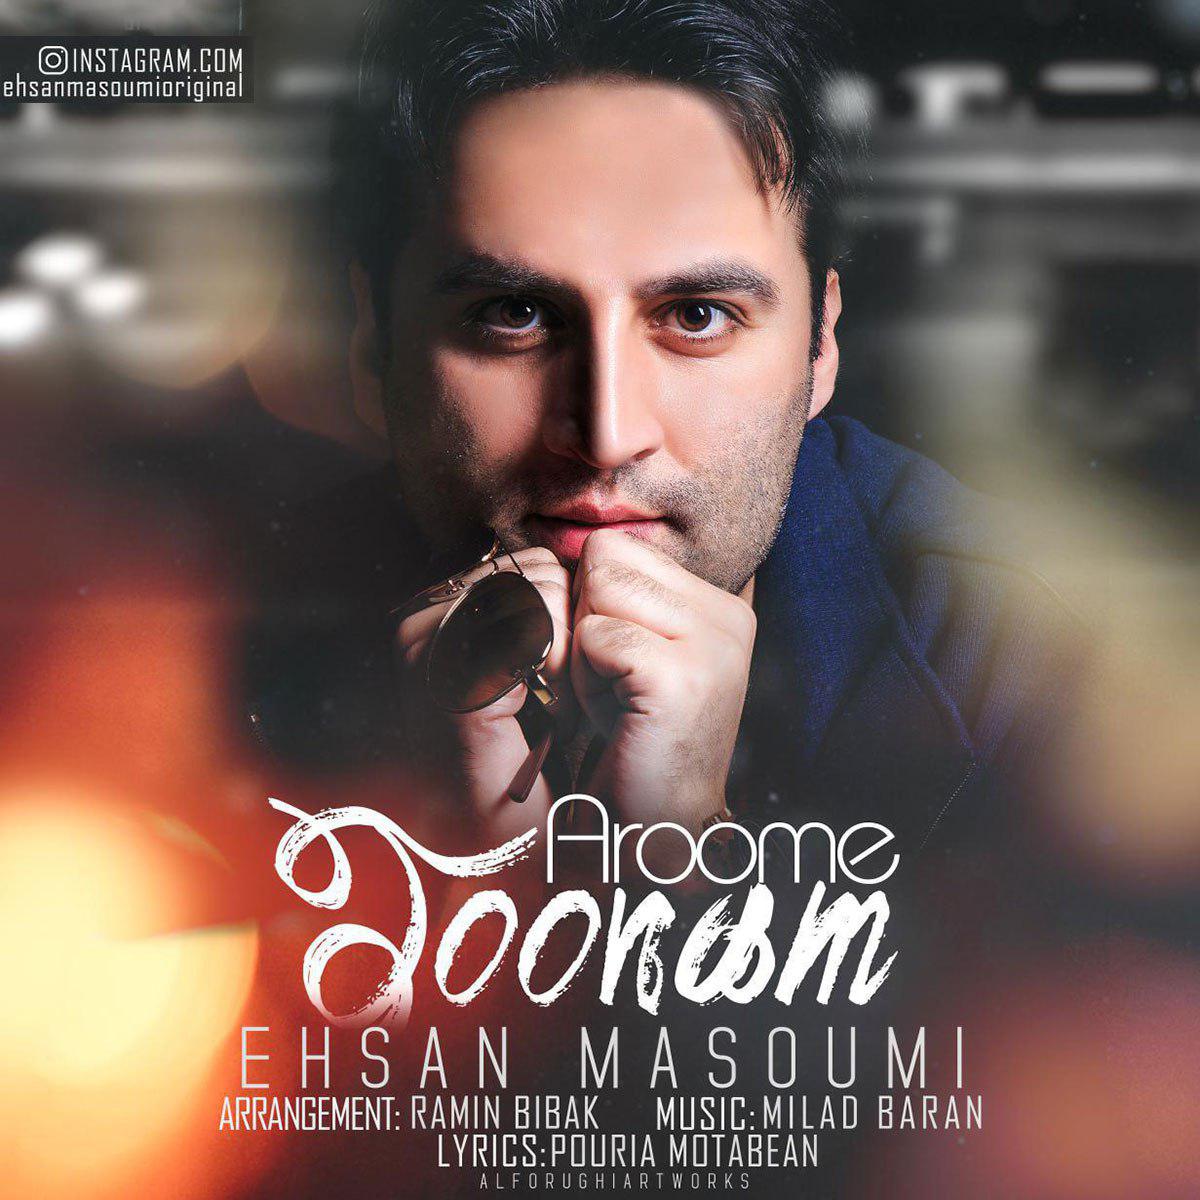  دانلود آهنگ جدید احسان معصومی - آروم جونم | Download New Music By Ehsan Masoumi - Aroome Joonam